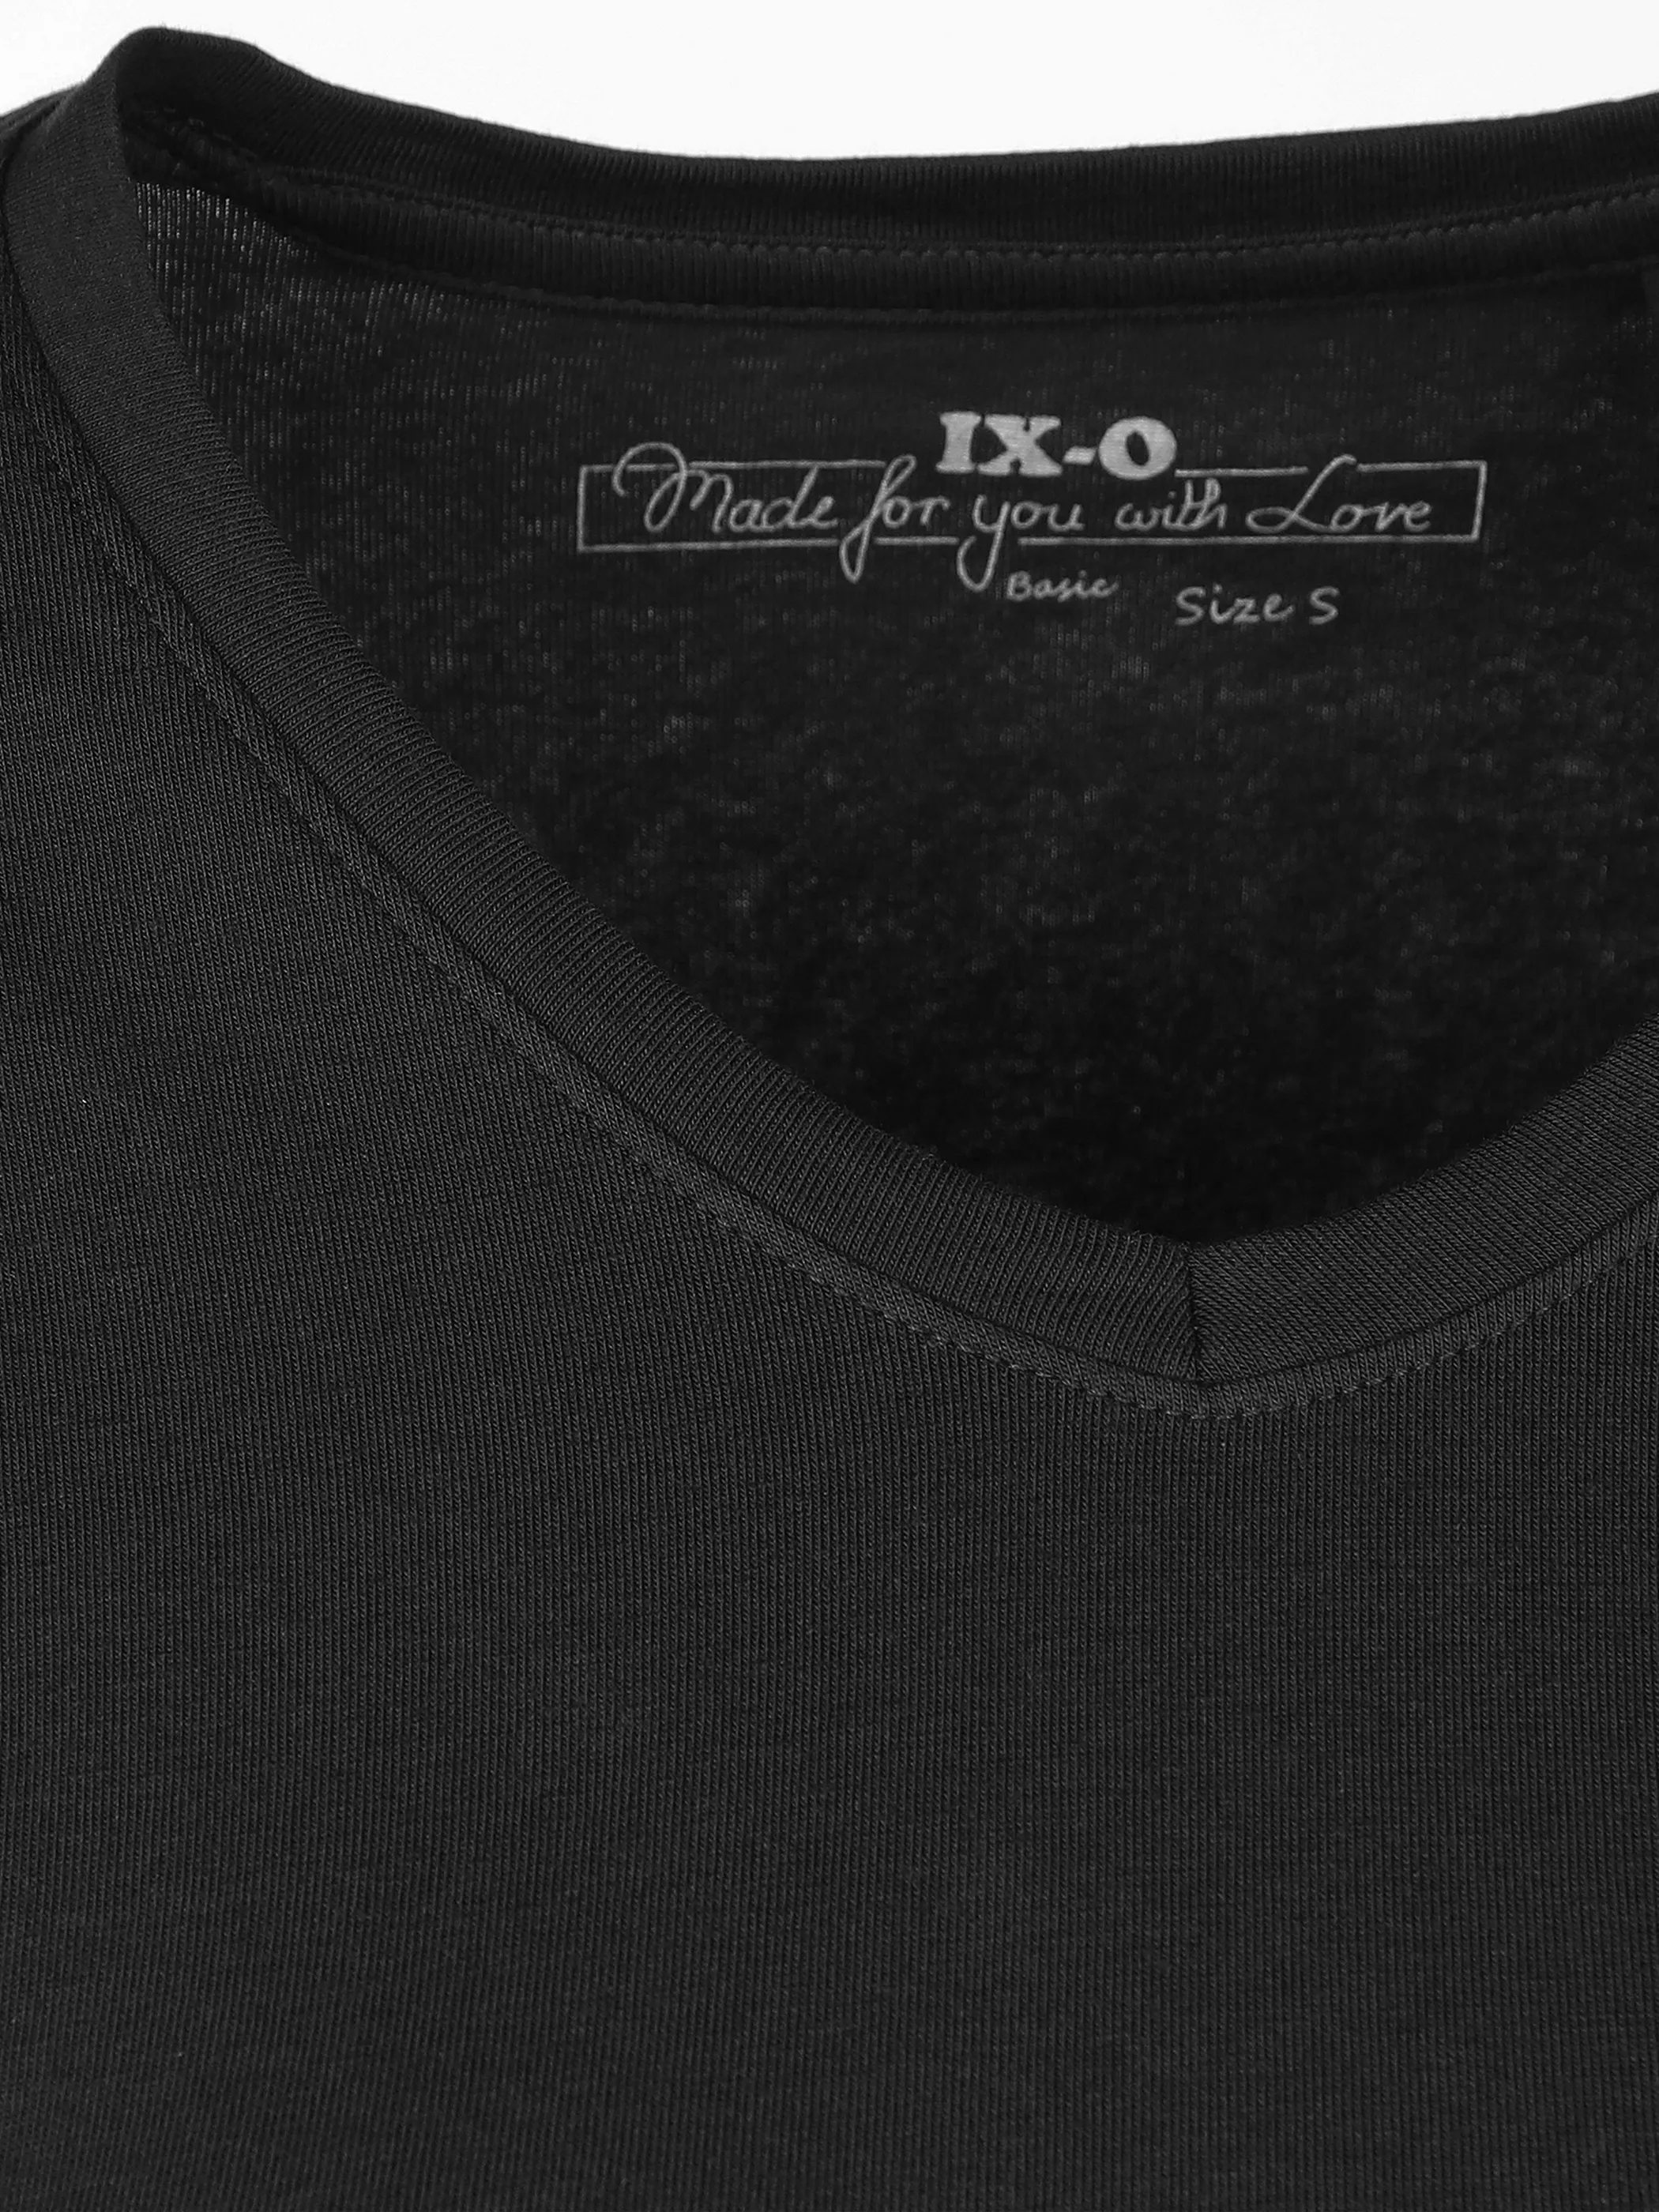 IX-O YF-Da-Shirt 1/2 Arm basic V-Ne Schwarz 783622 BLACK 3